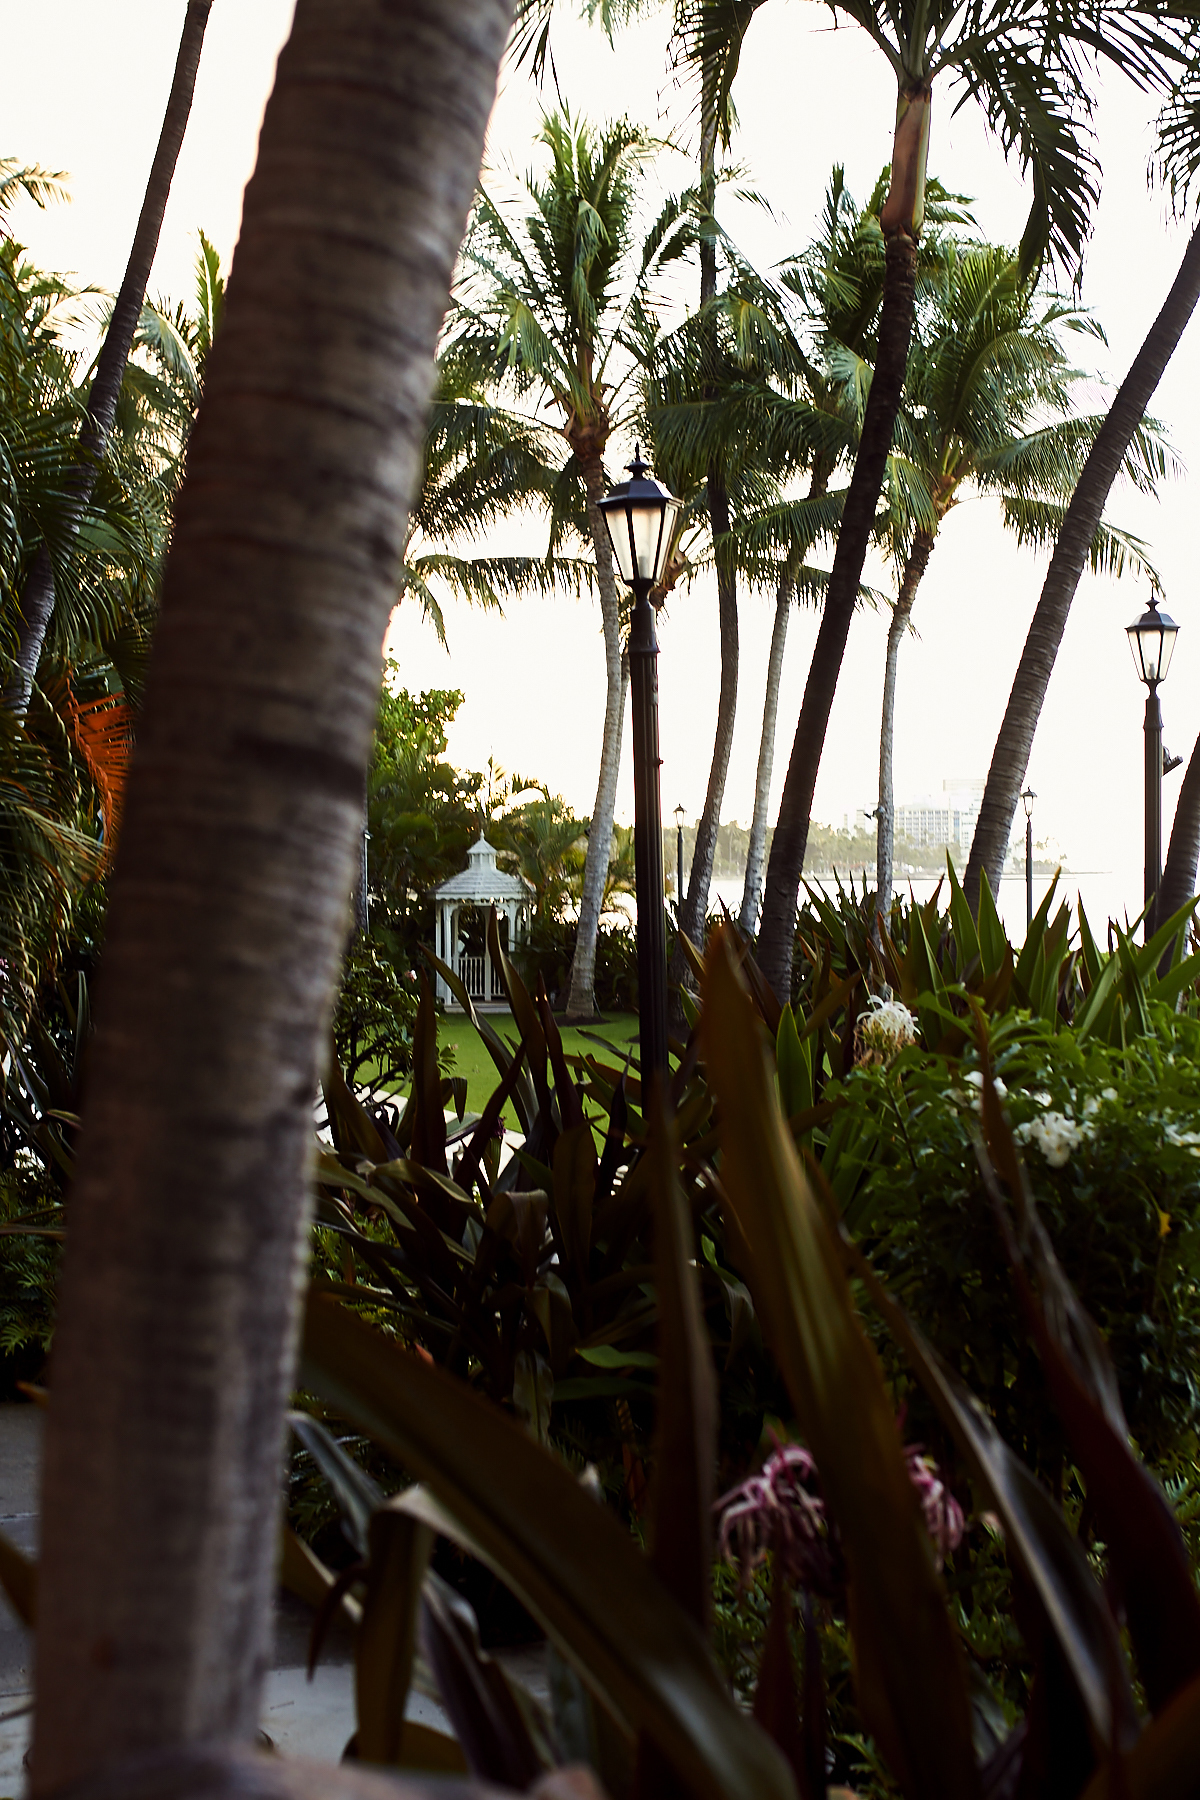 Moana Surfrider Hotel, Waikiki Beach Hawaii